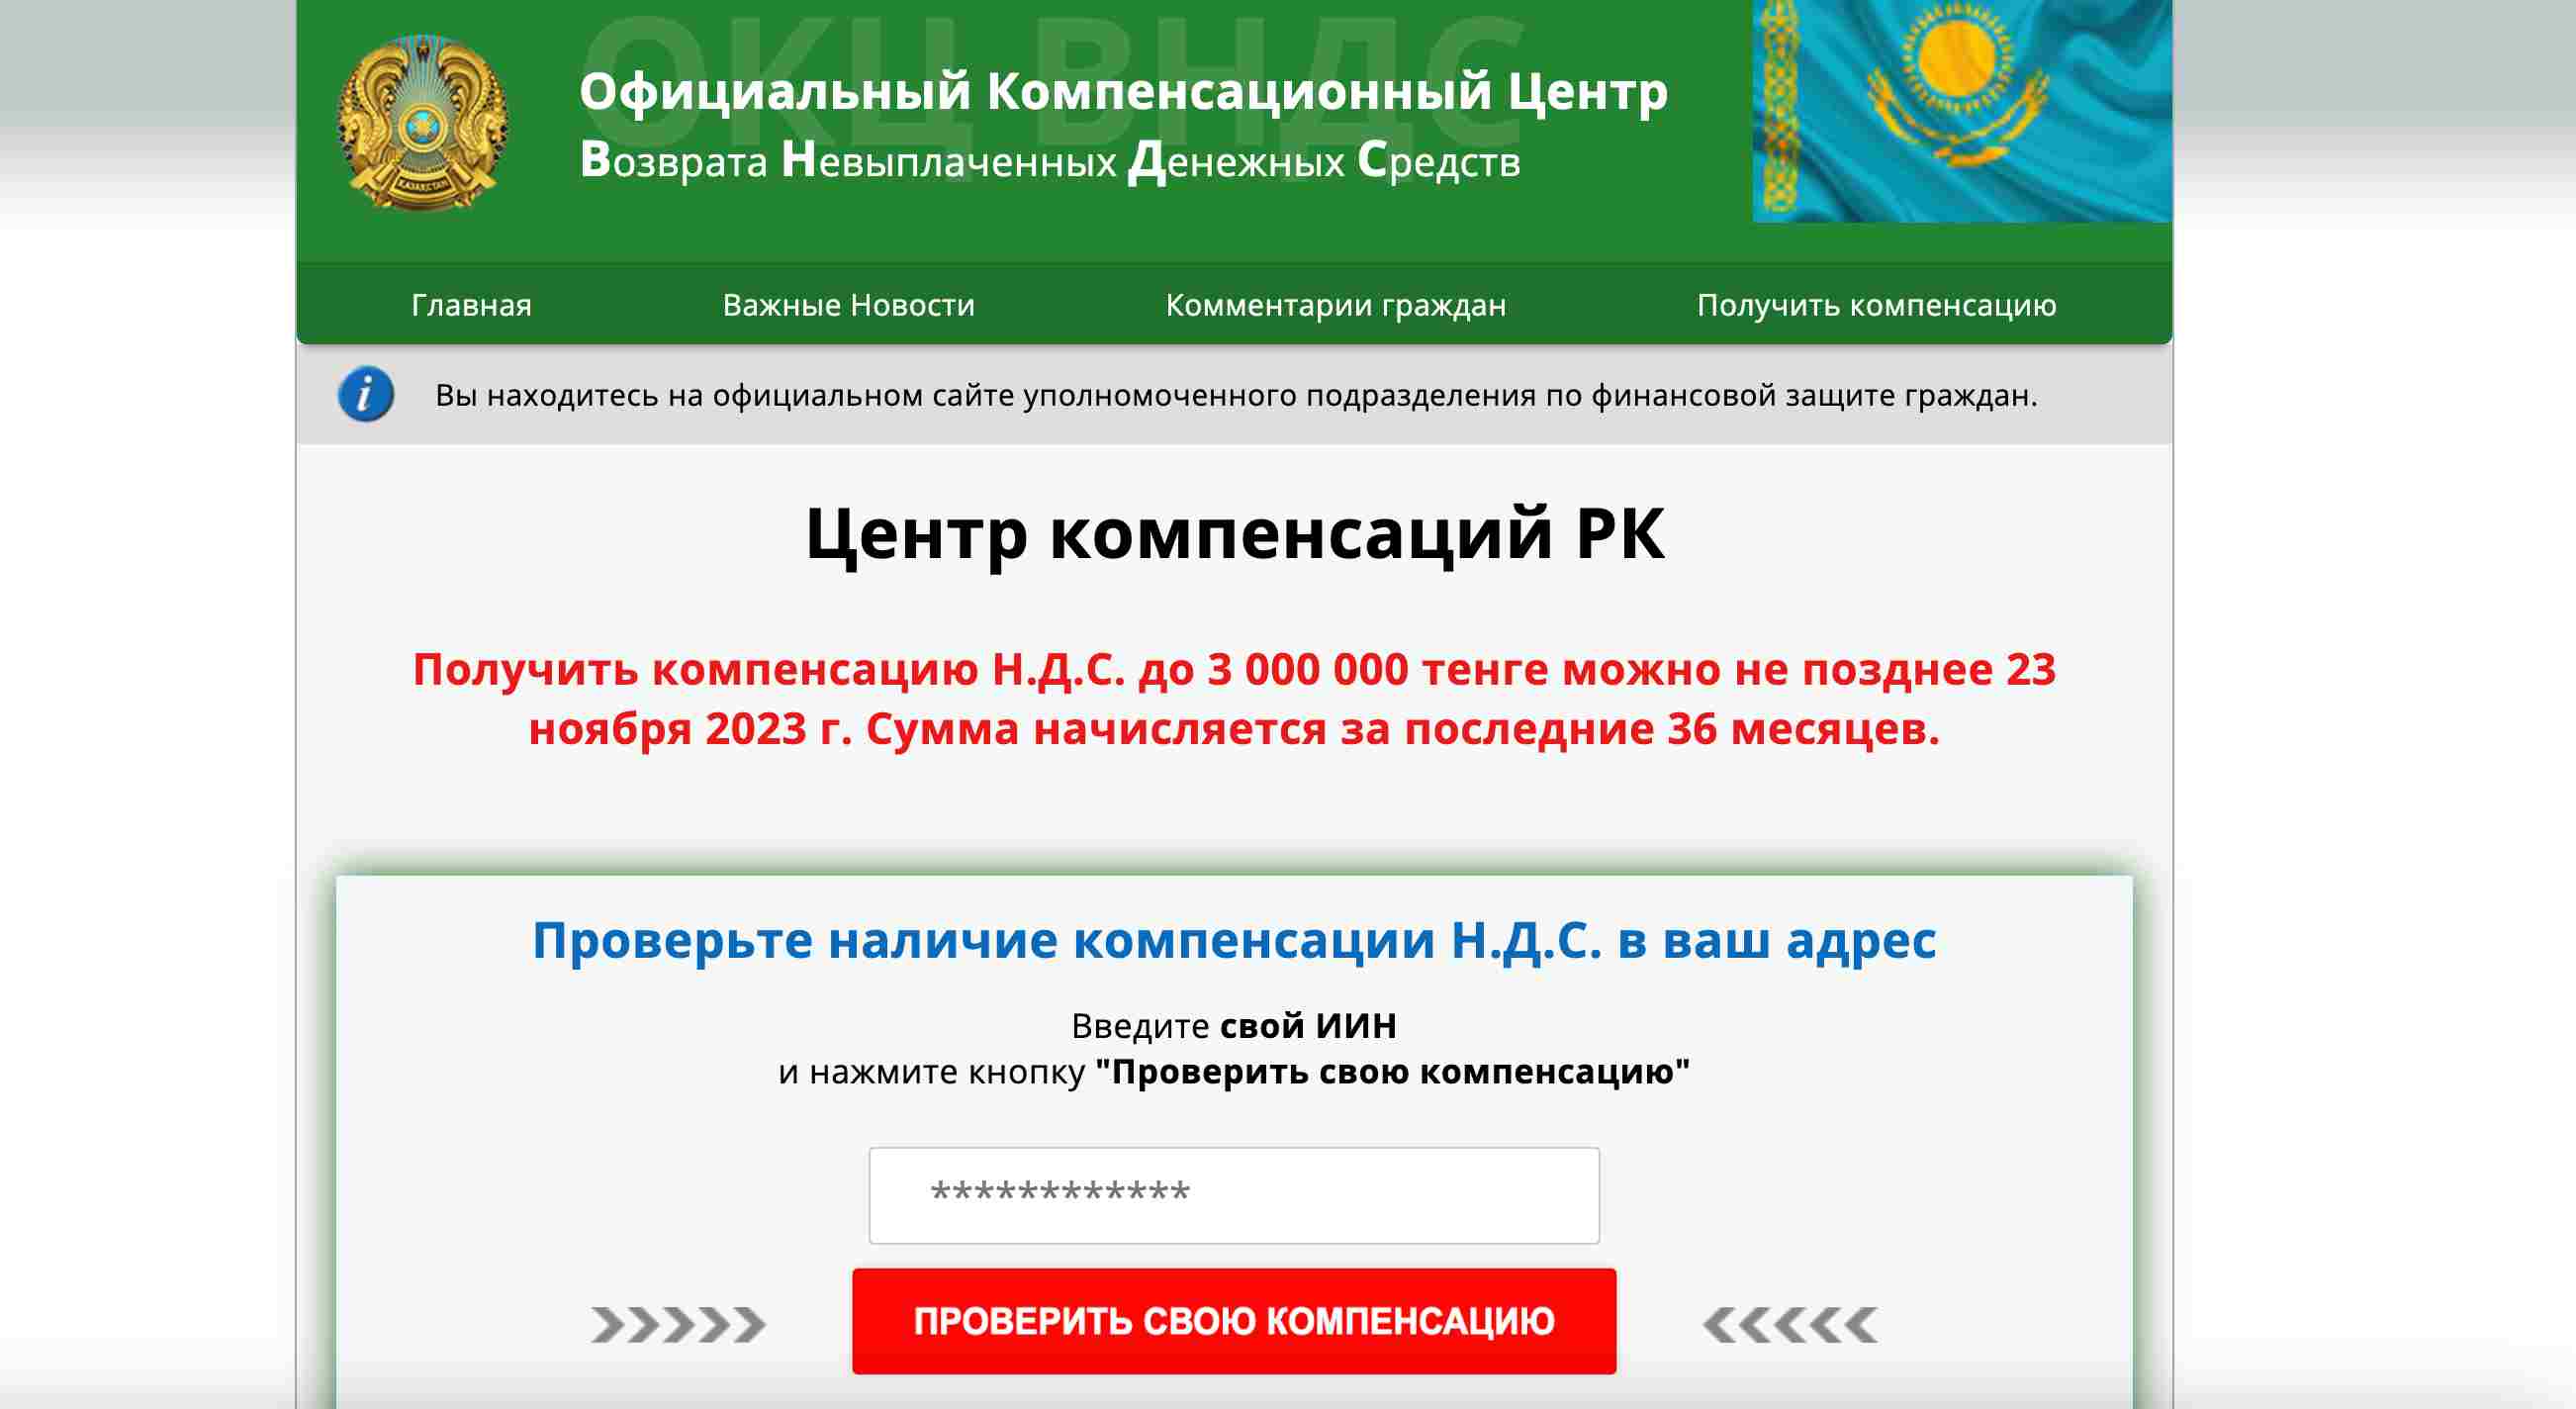 ОКЦ ВНДС Казахстан — действительно возвращает деньги или это очередной проект аферистов?